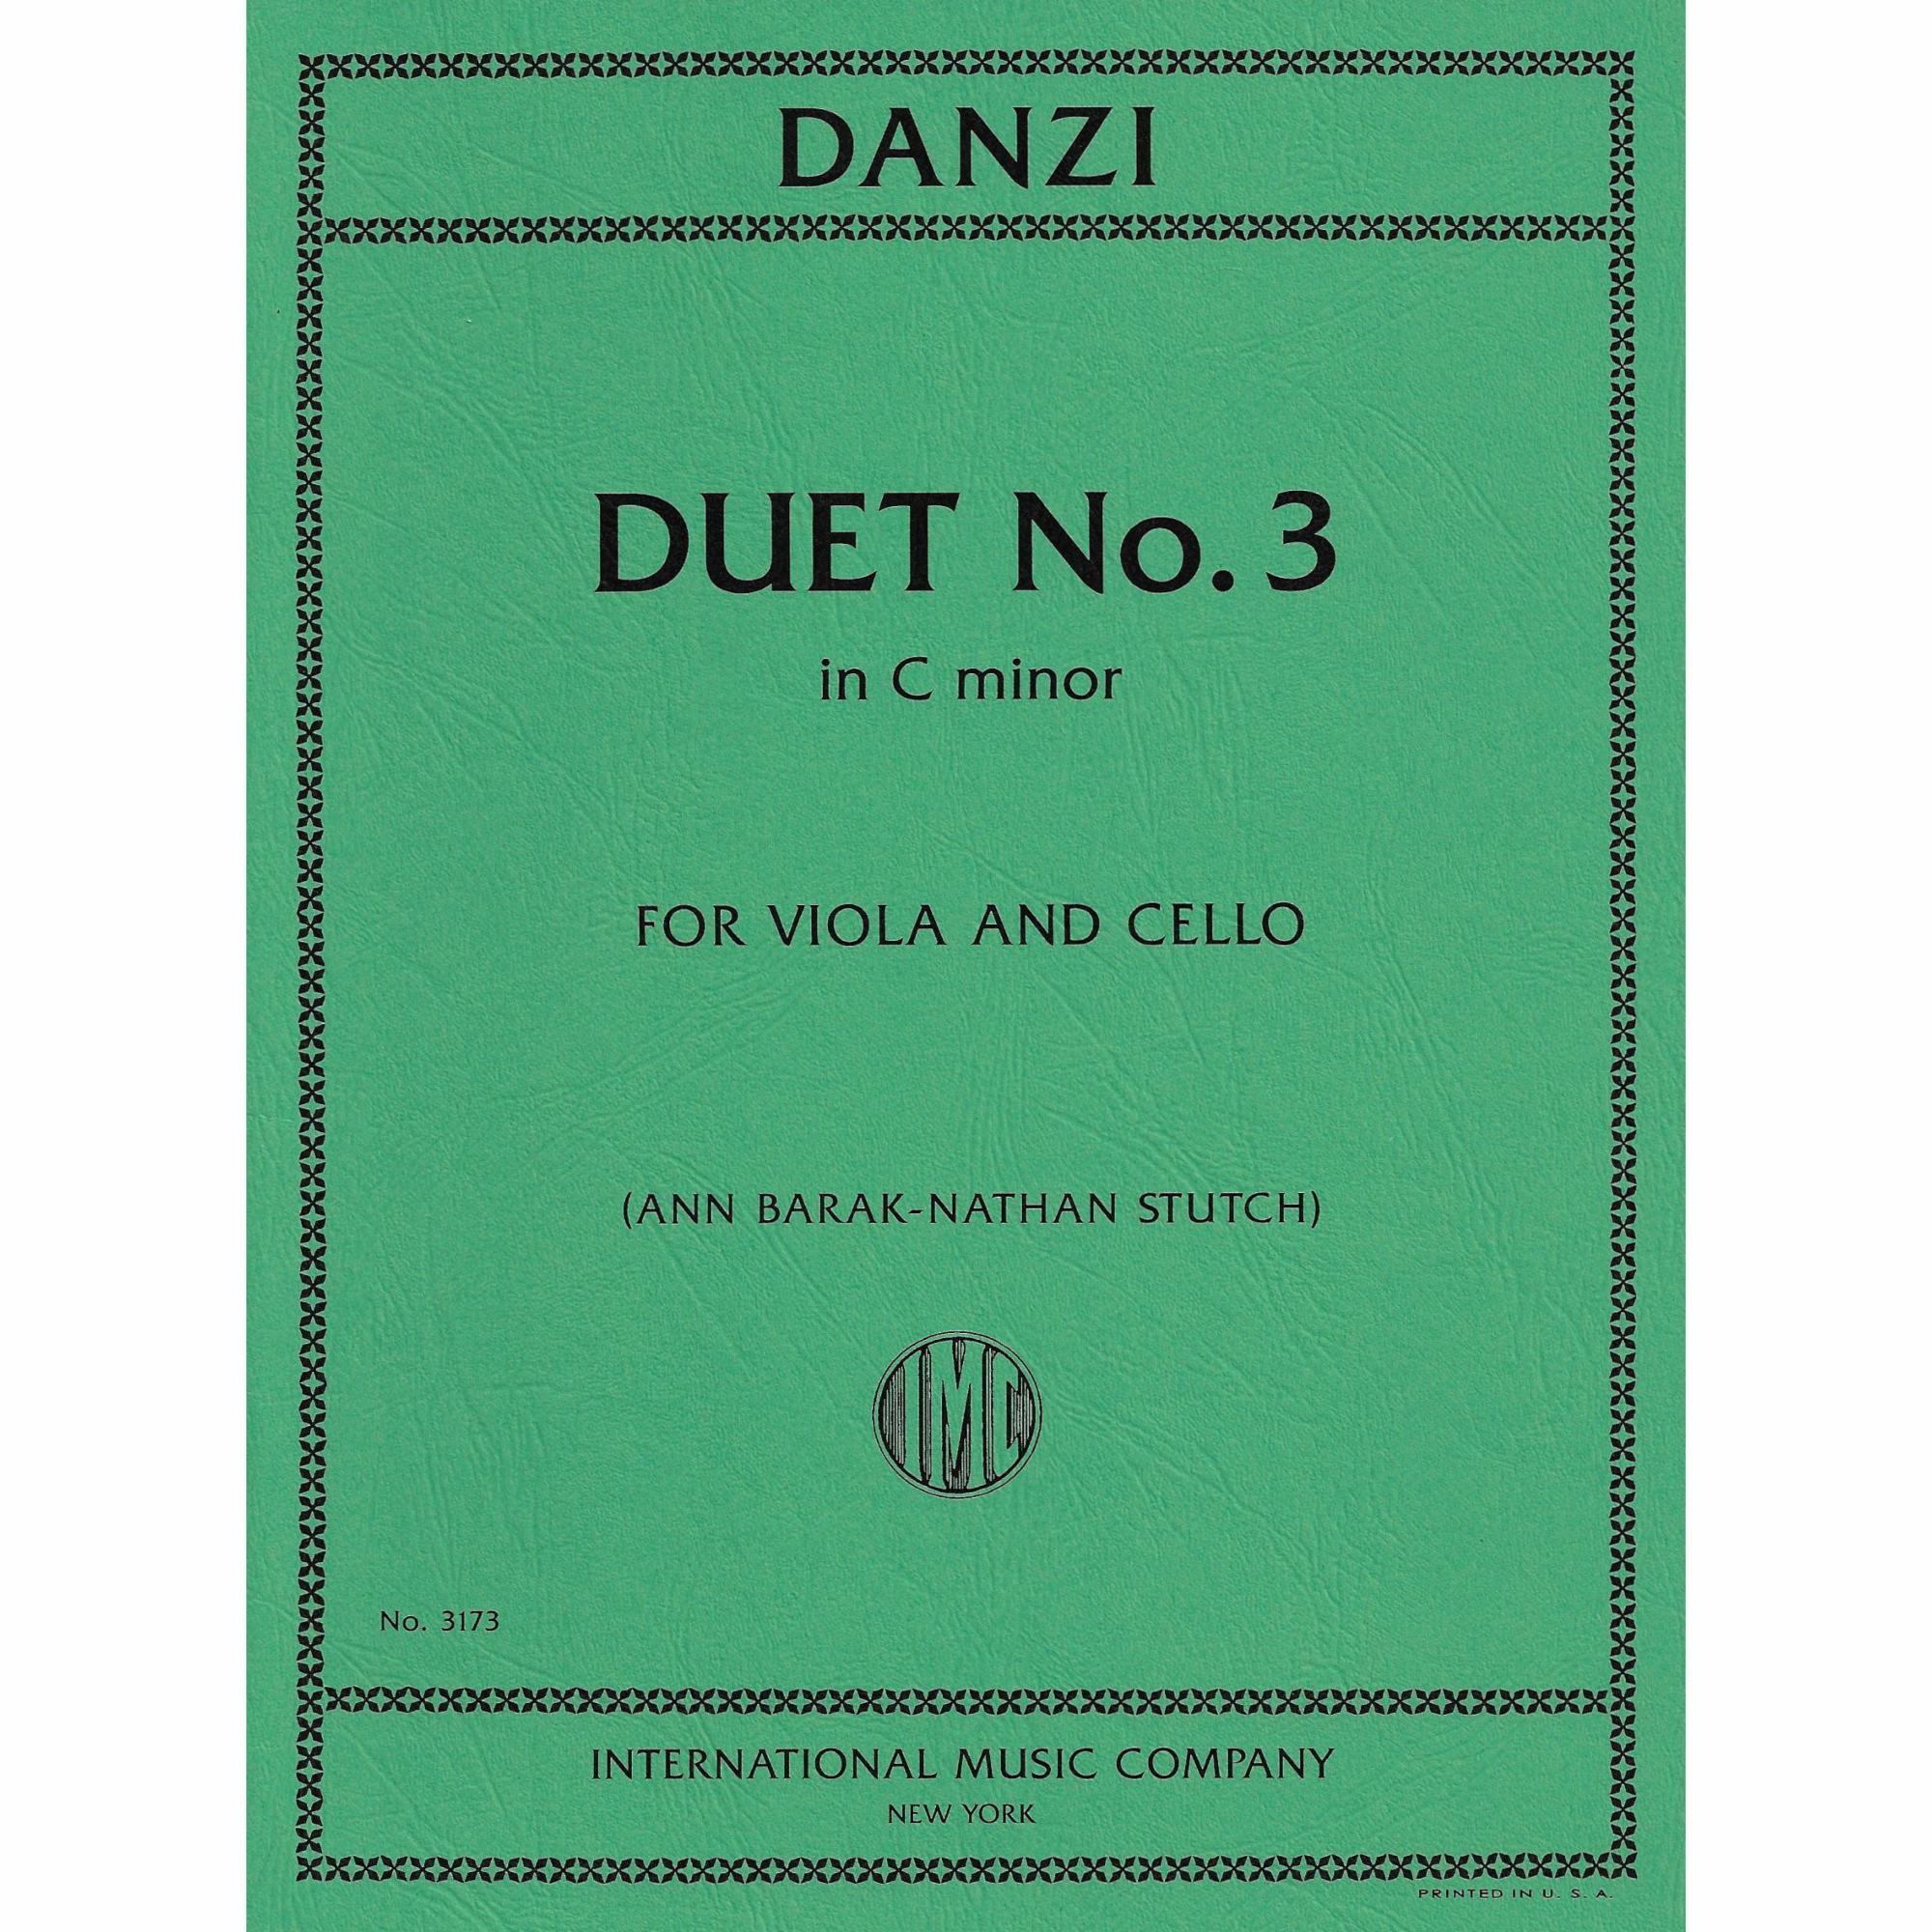 Danzi -- Duet No. 3 in C Minor for Viola and Cello